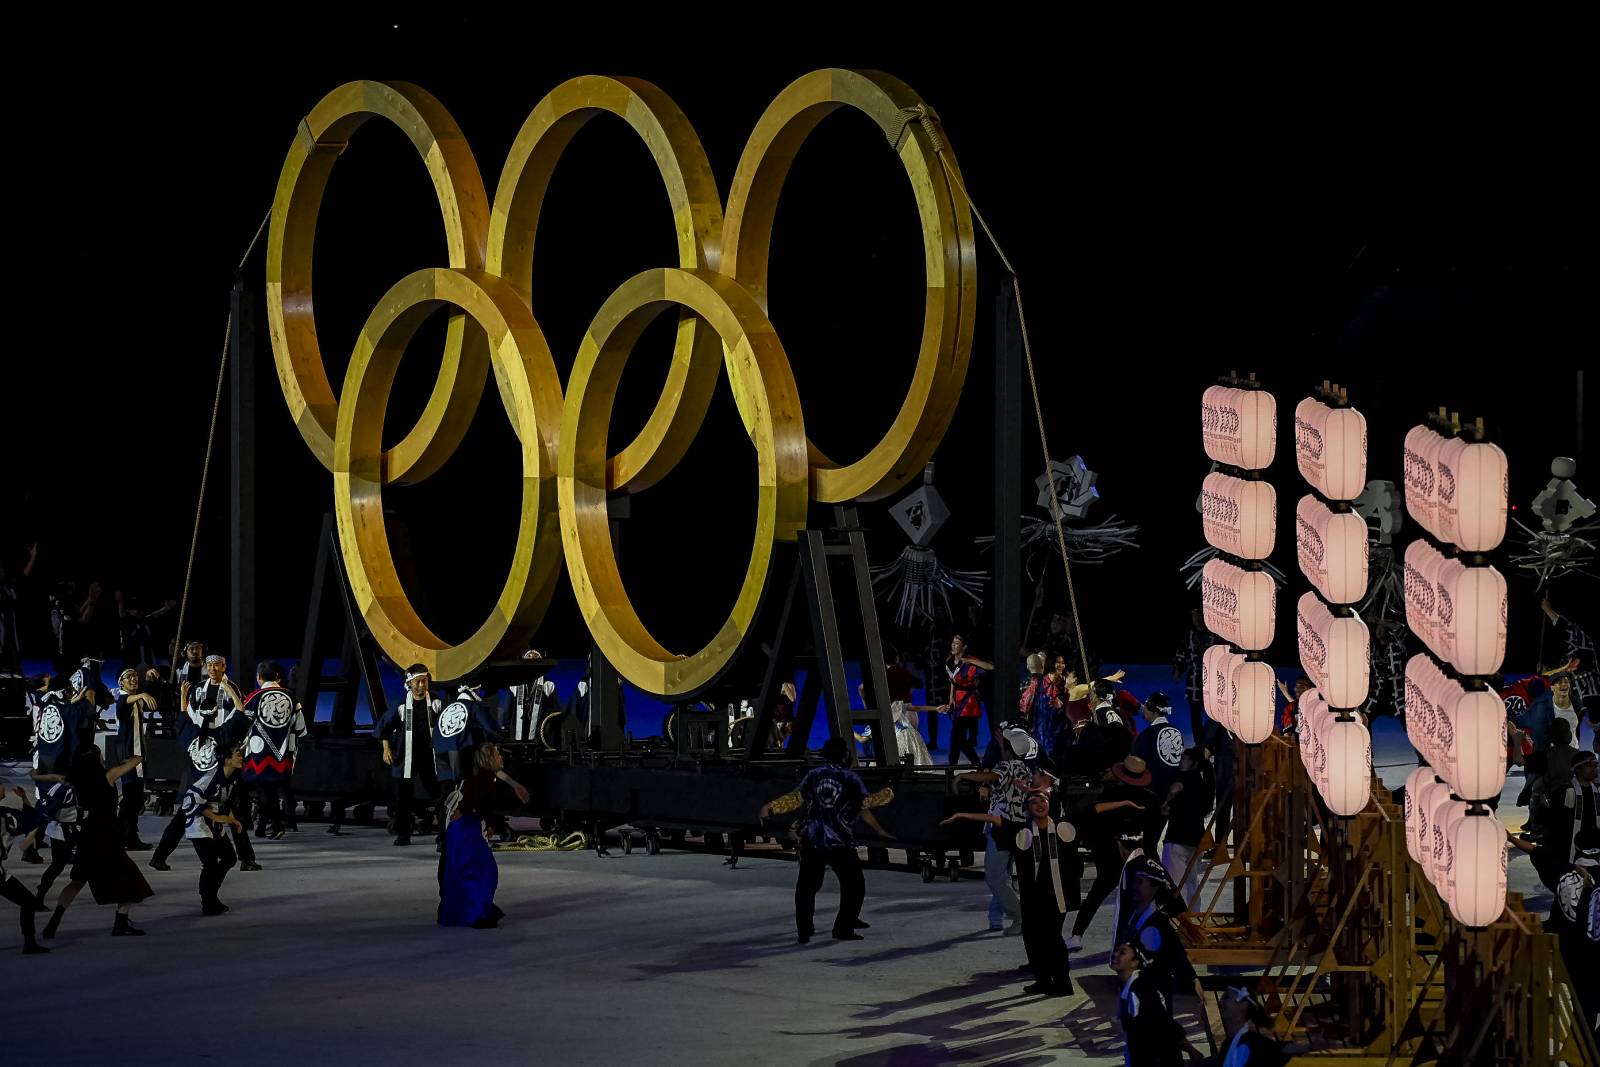 Первый день, первые успехи и скандалы: Дневник Олимпиады Токио-2020 23 июля